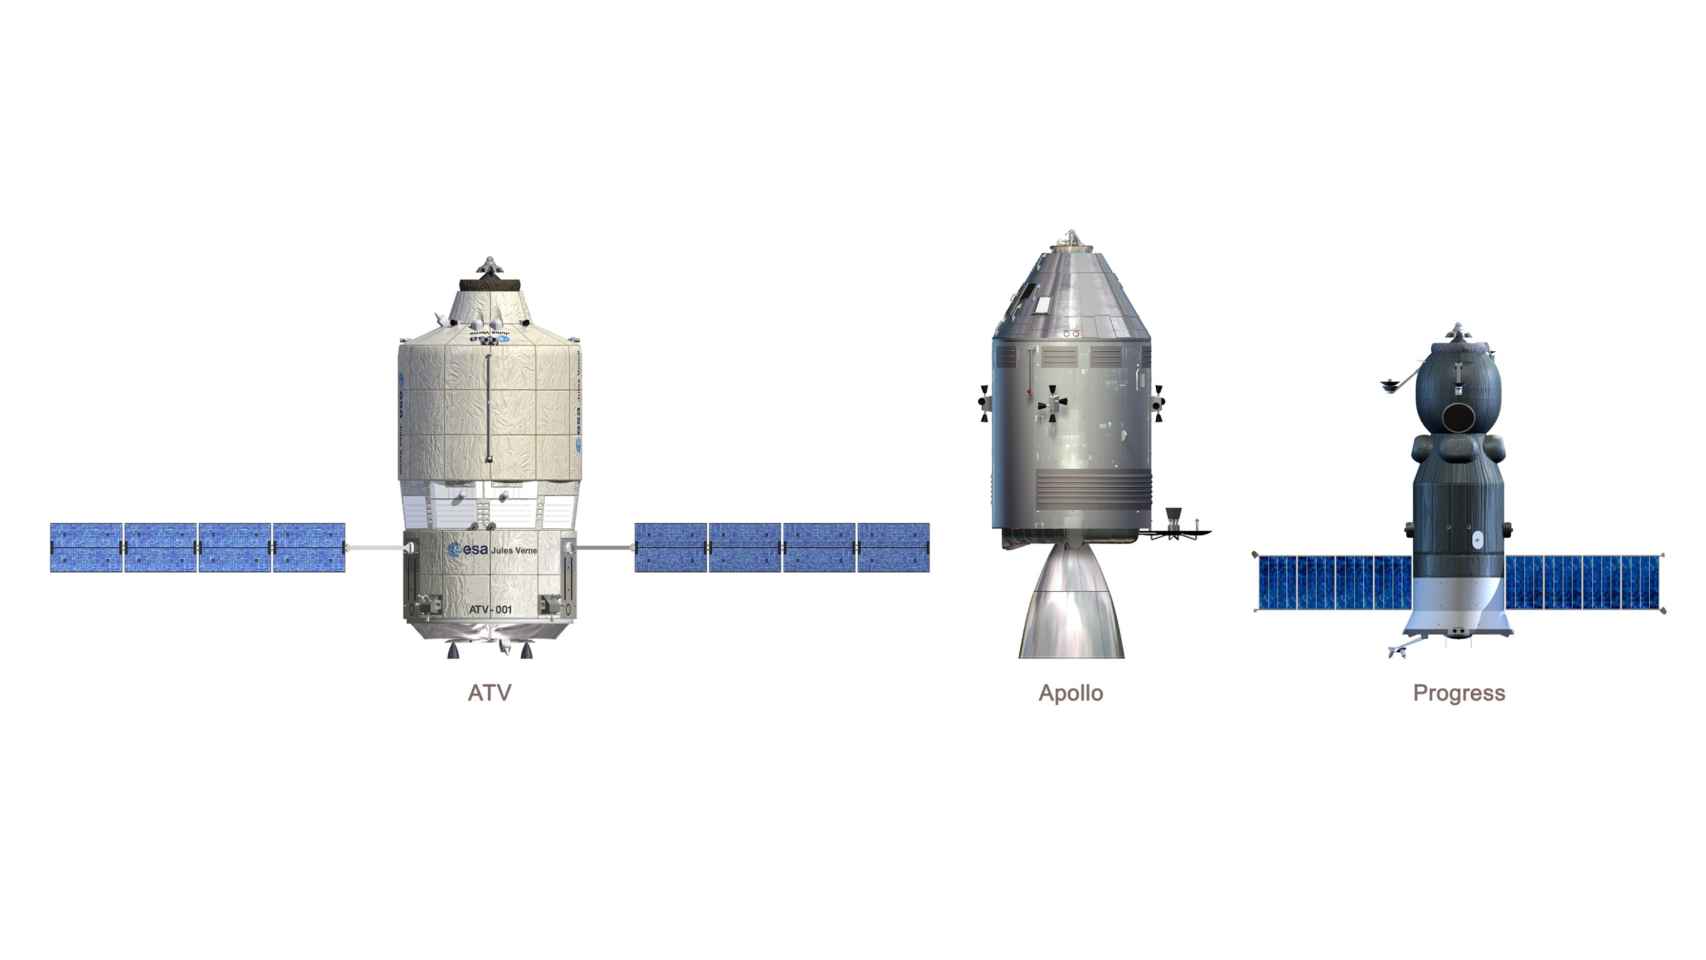 Comparativa de tamaño entre el cohete Apollo y los remolcadores ATV y Progress